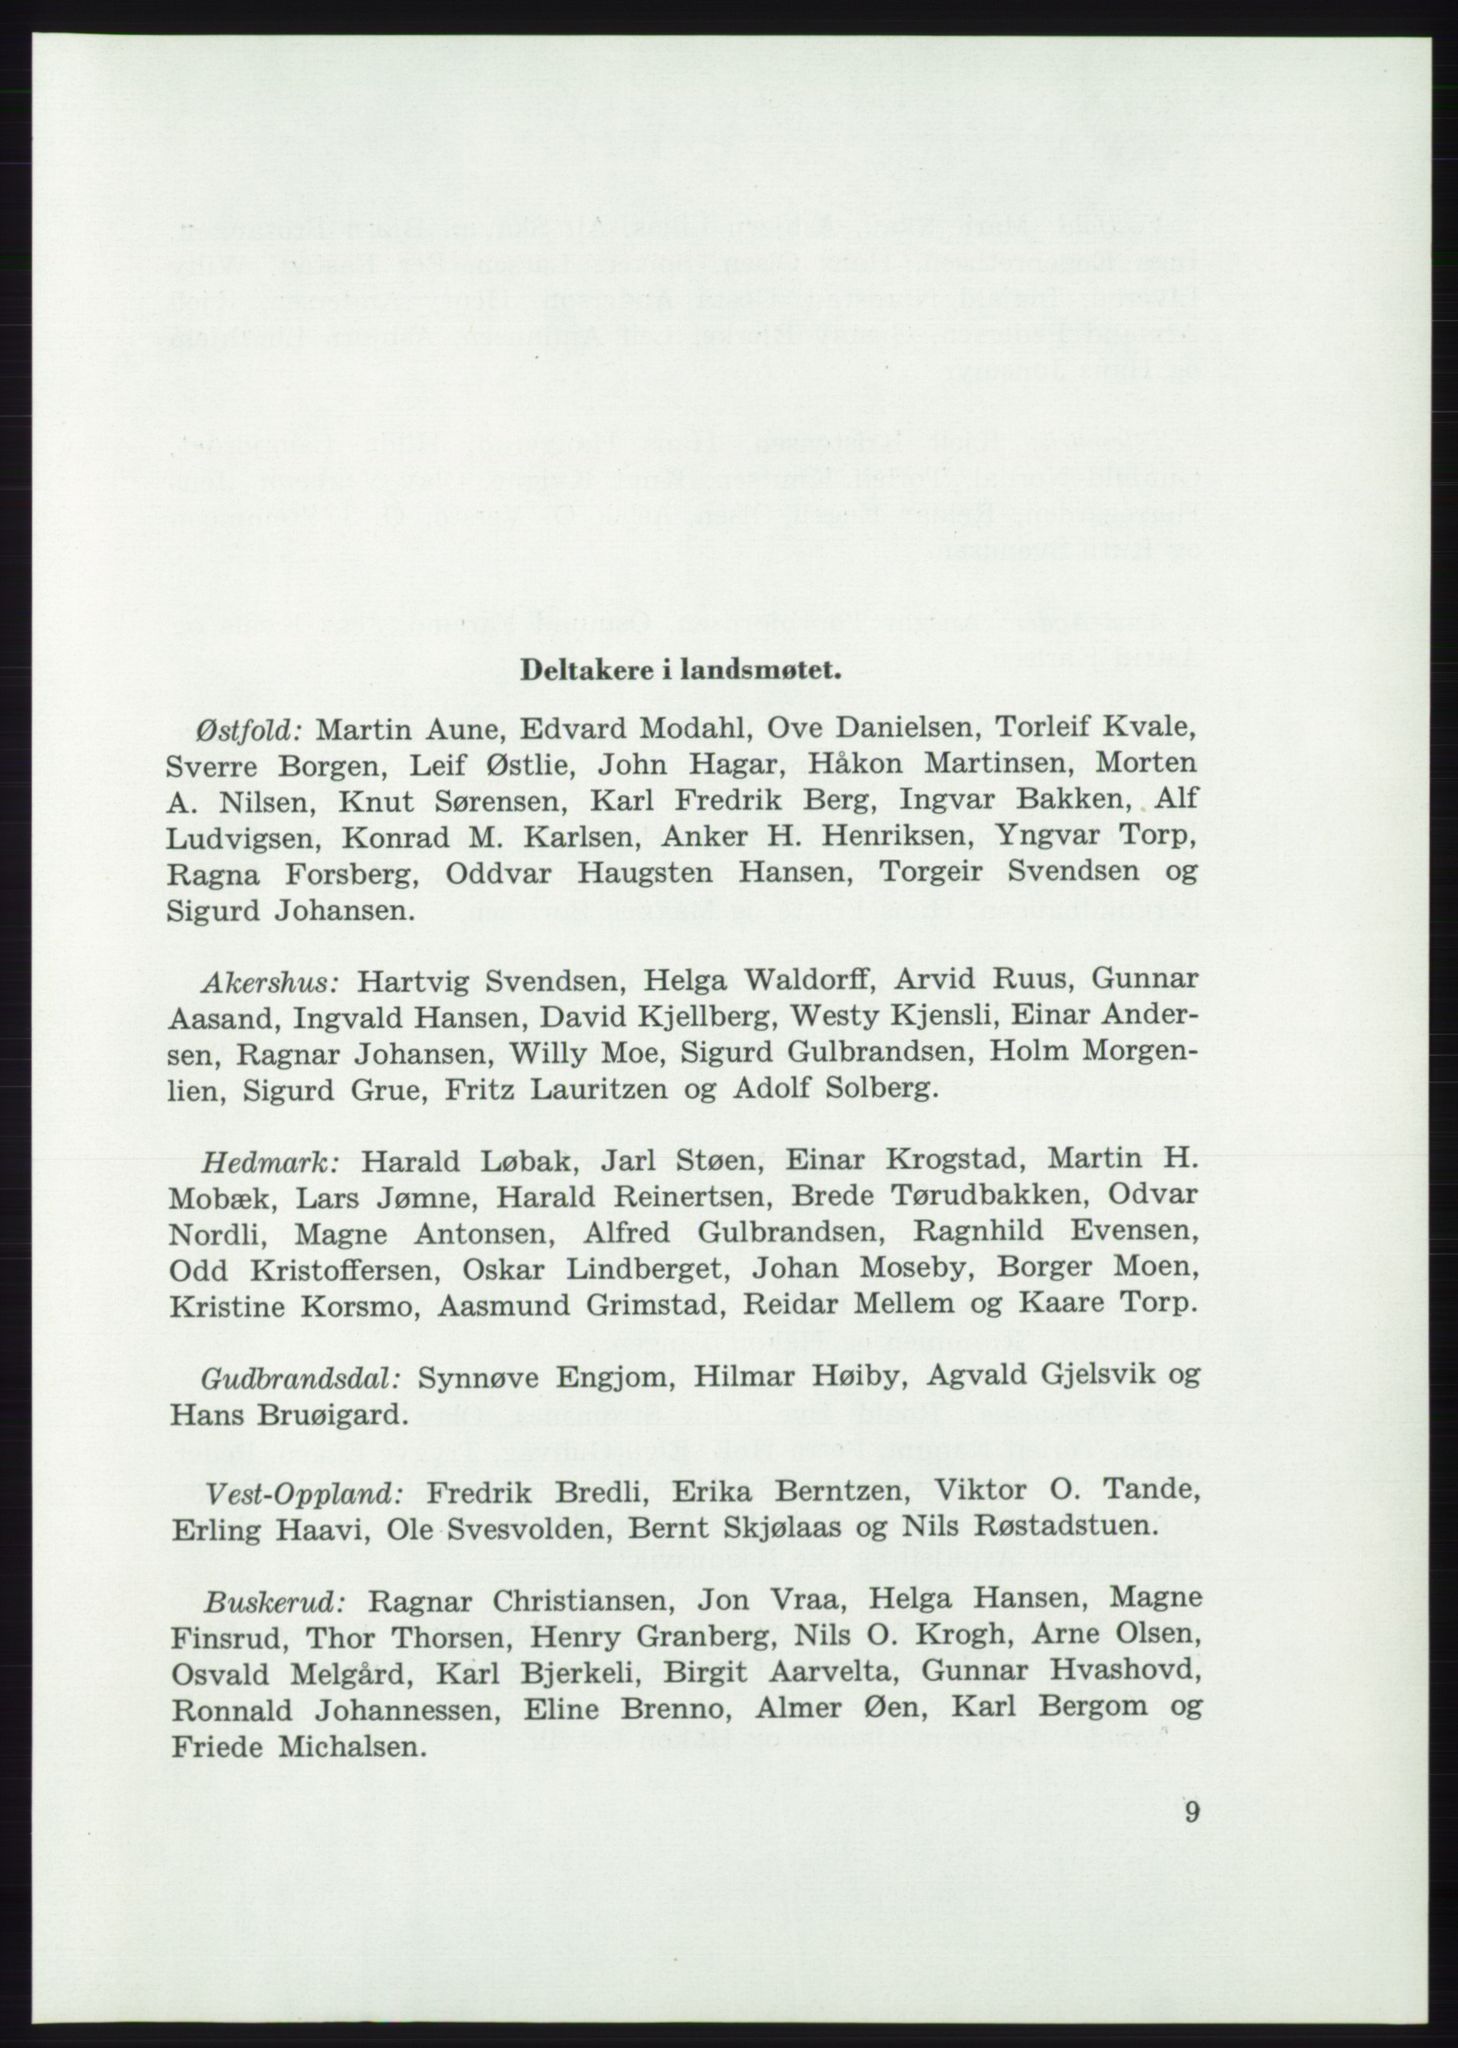 Det norske Arbeiderparti - publikasjoner, AAB/-/-/-: Protokoll over forhandlingene på det 37. ordinære landsmøte 7.-9. mai 1959 i Oslo, 1959, p. 9